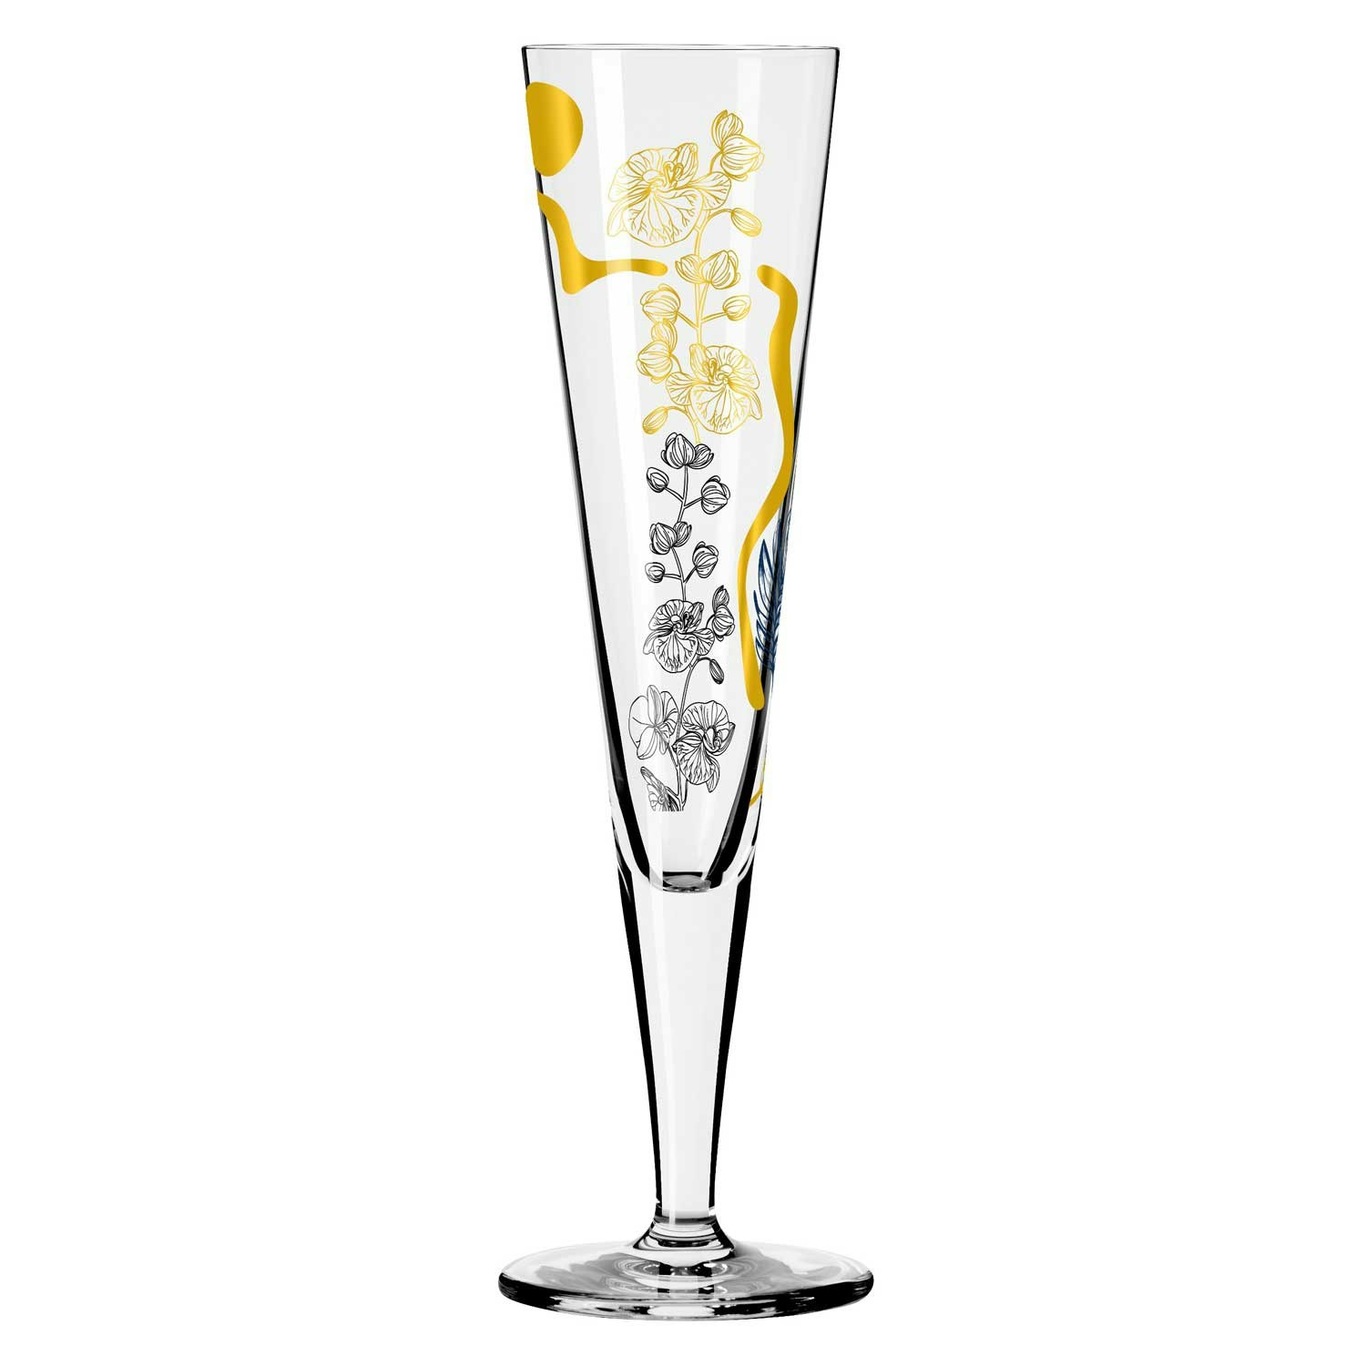 Goldnacht Champagne Glass, NO: 38